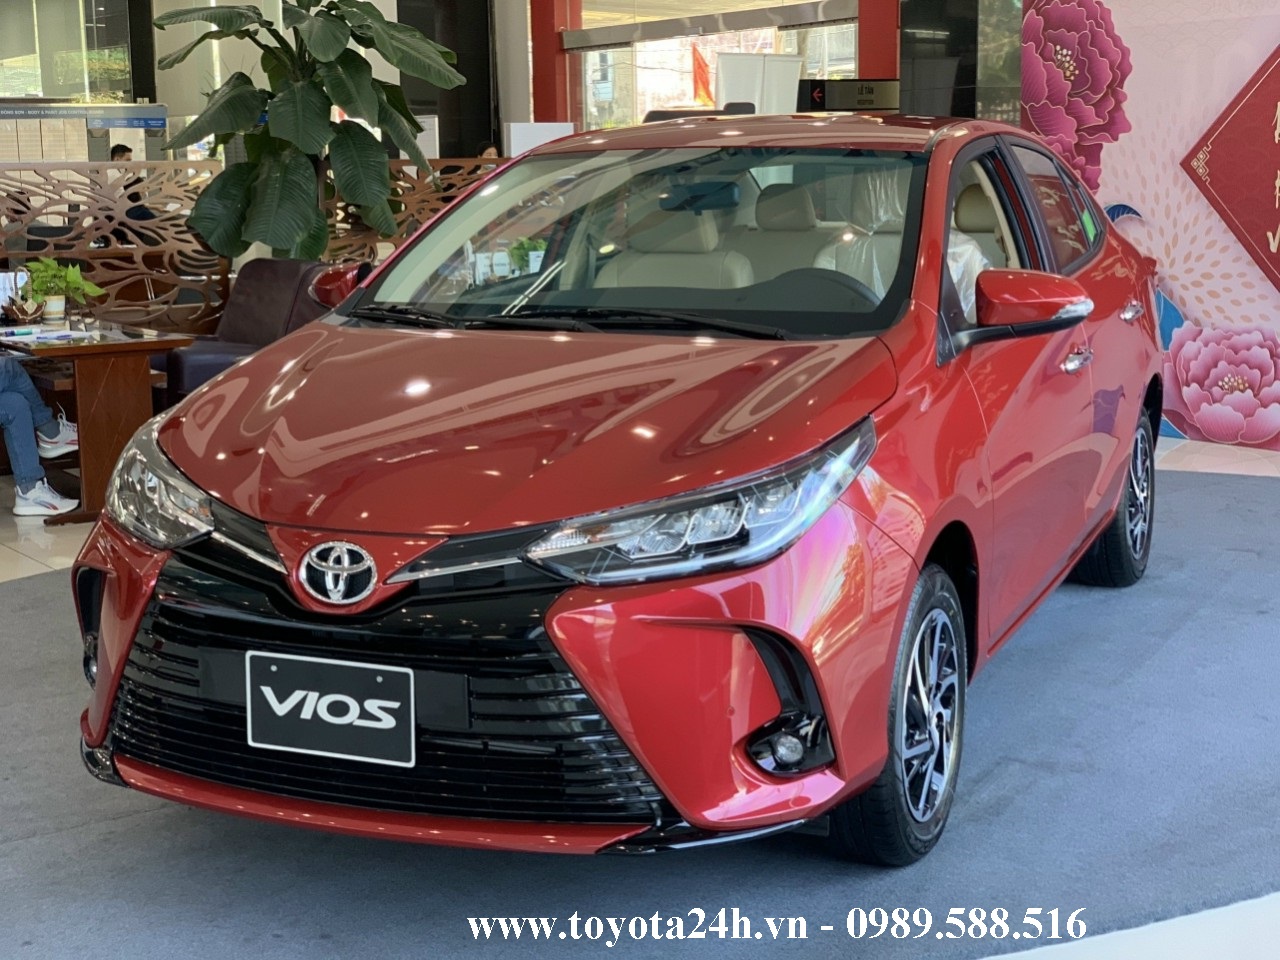 Toyota Vios 2022 Màu Đỏ | Bảng Giá Xe | Hình Ảnh | 1.5G CVT Thông Số Lăn Bánh